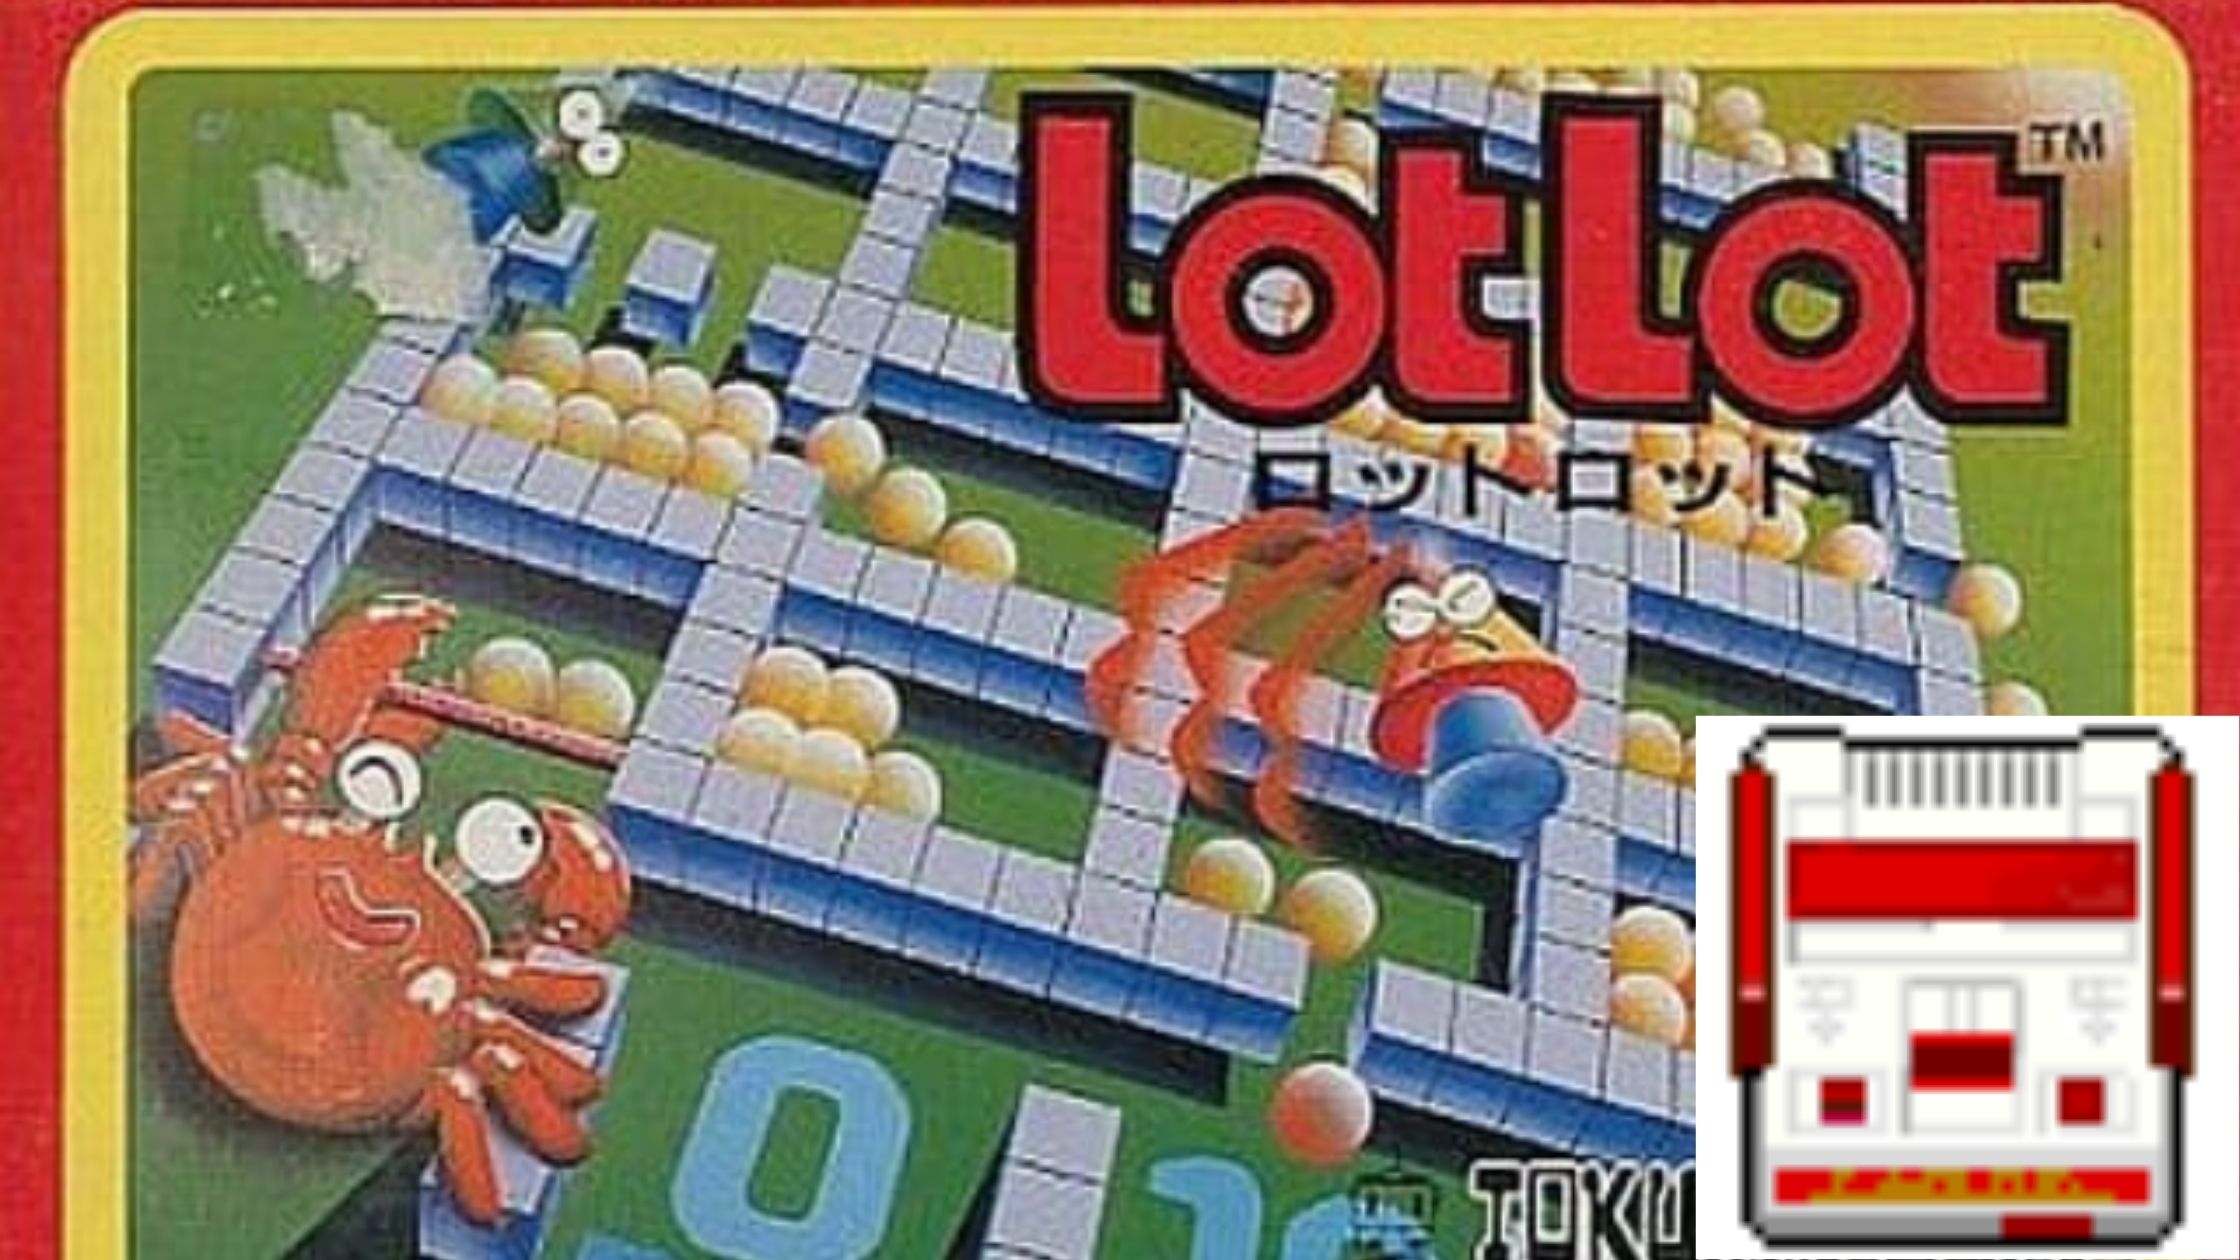 LotLot(ロットロット)【FC】一見とっつきにくいが地味に遊べるパズルゲーム